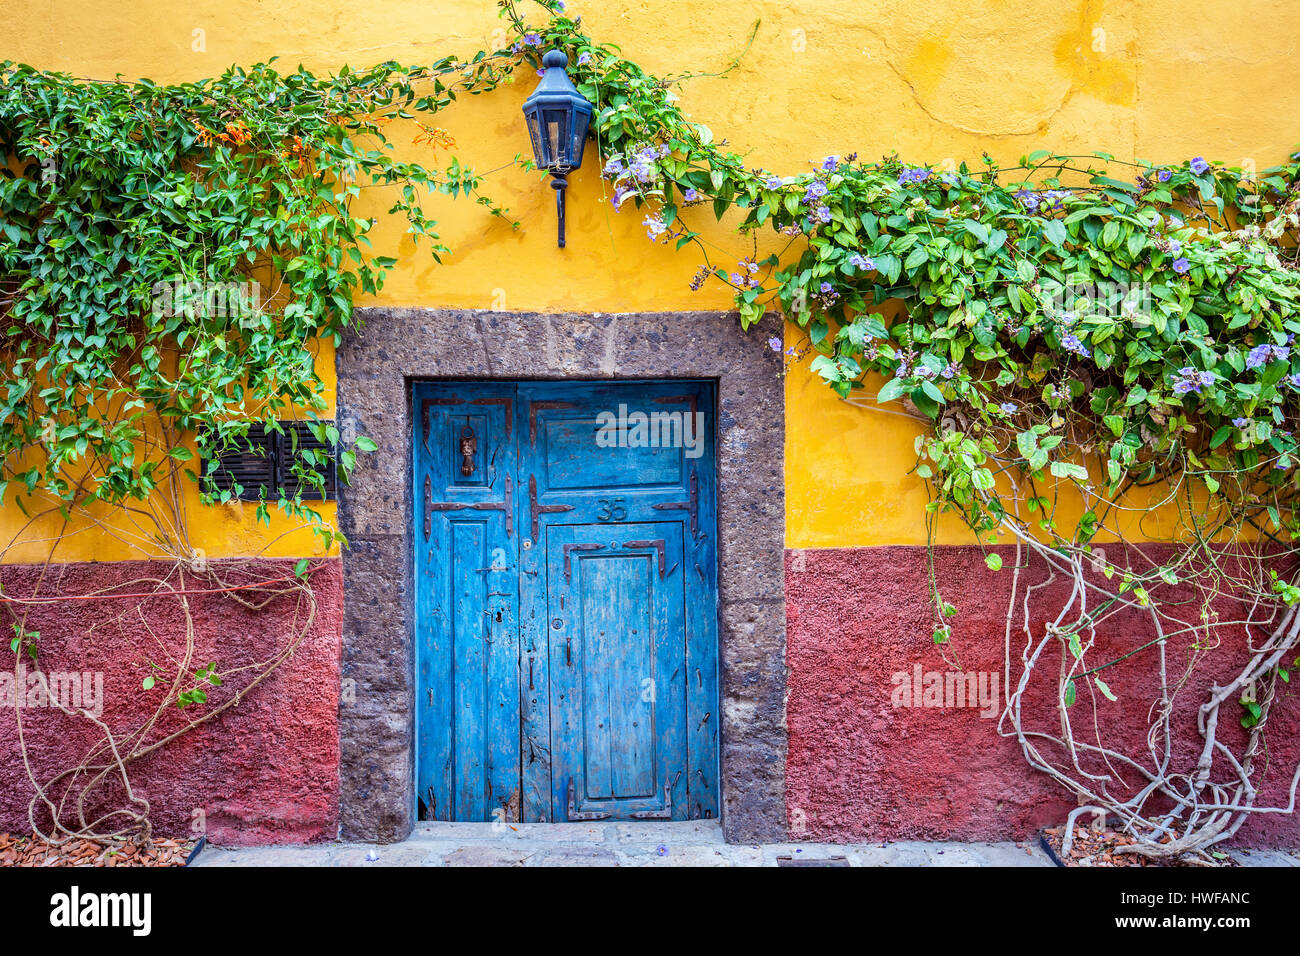 Ein buntes Haus schmückt eine der Seitenstraßen in kolonialen San Miguel de Allende, Mexiko. Stockfoto